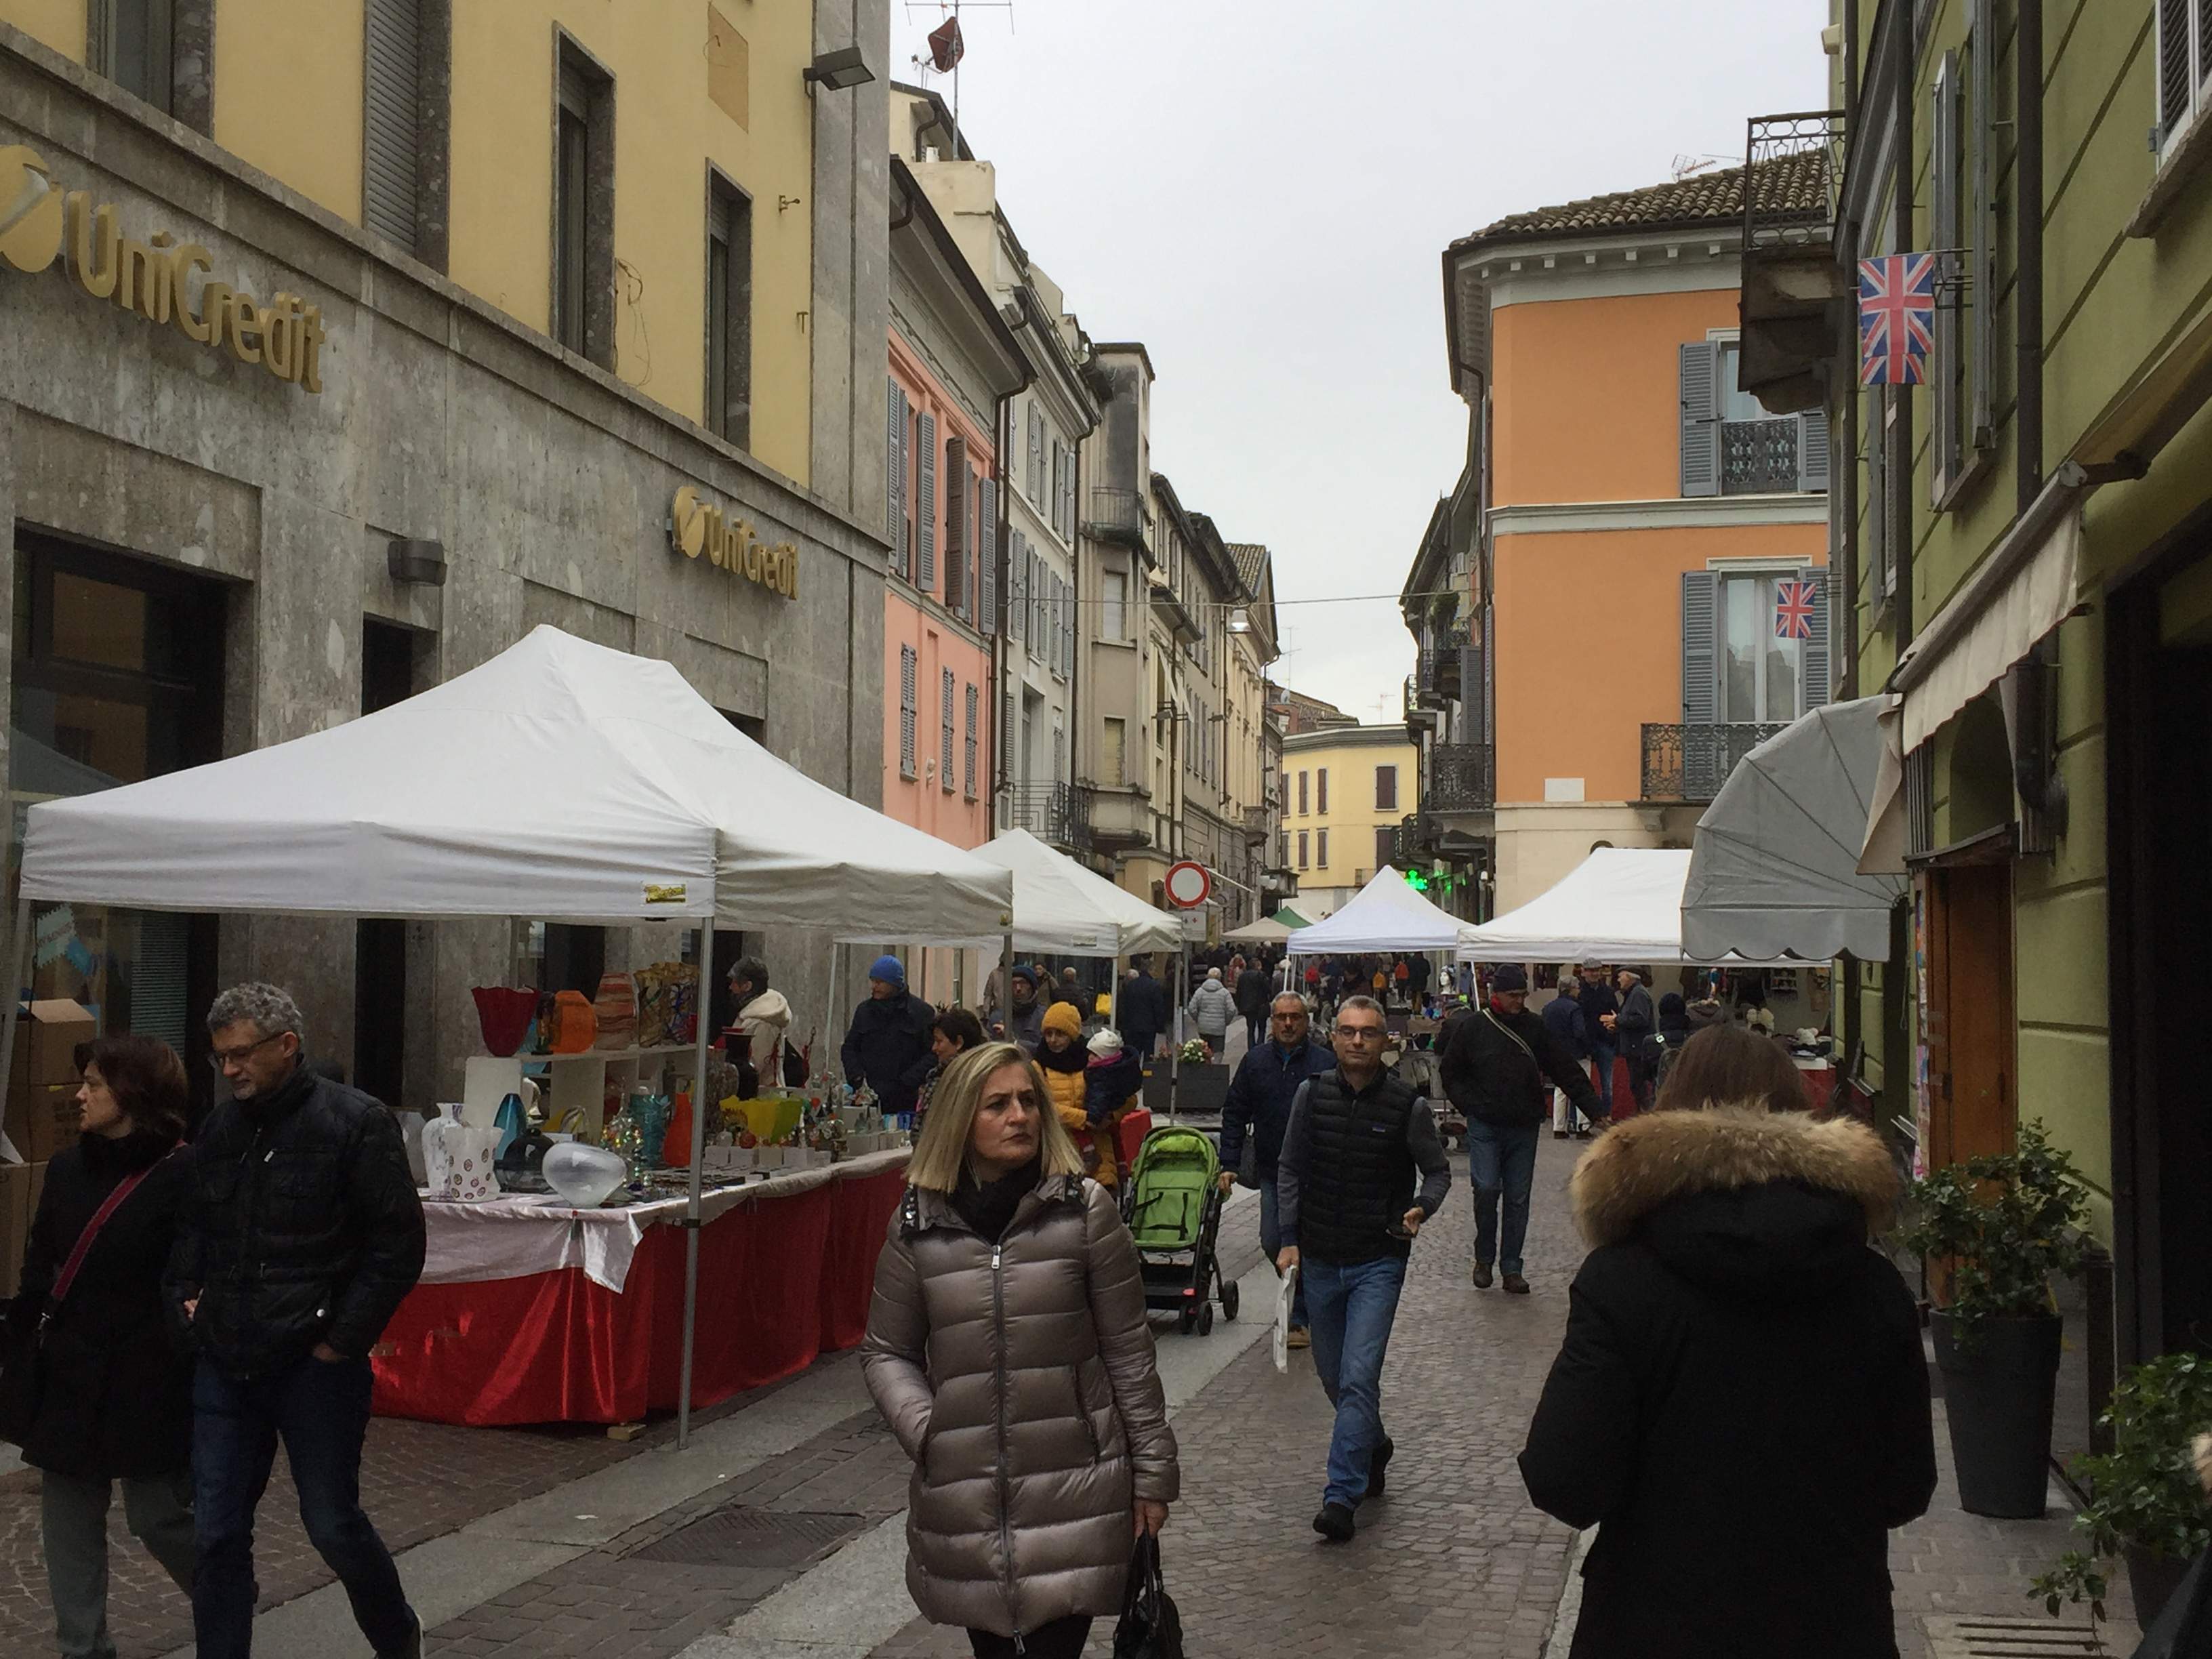 tradizionale mercatino "Curiosità in Via Emilia" presso il centro storico di Voghera (PV))